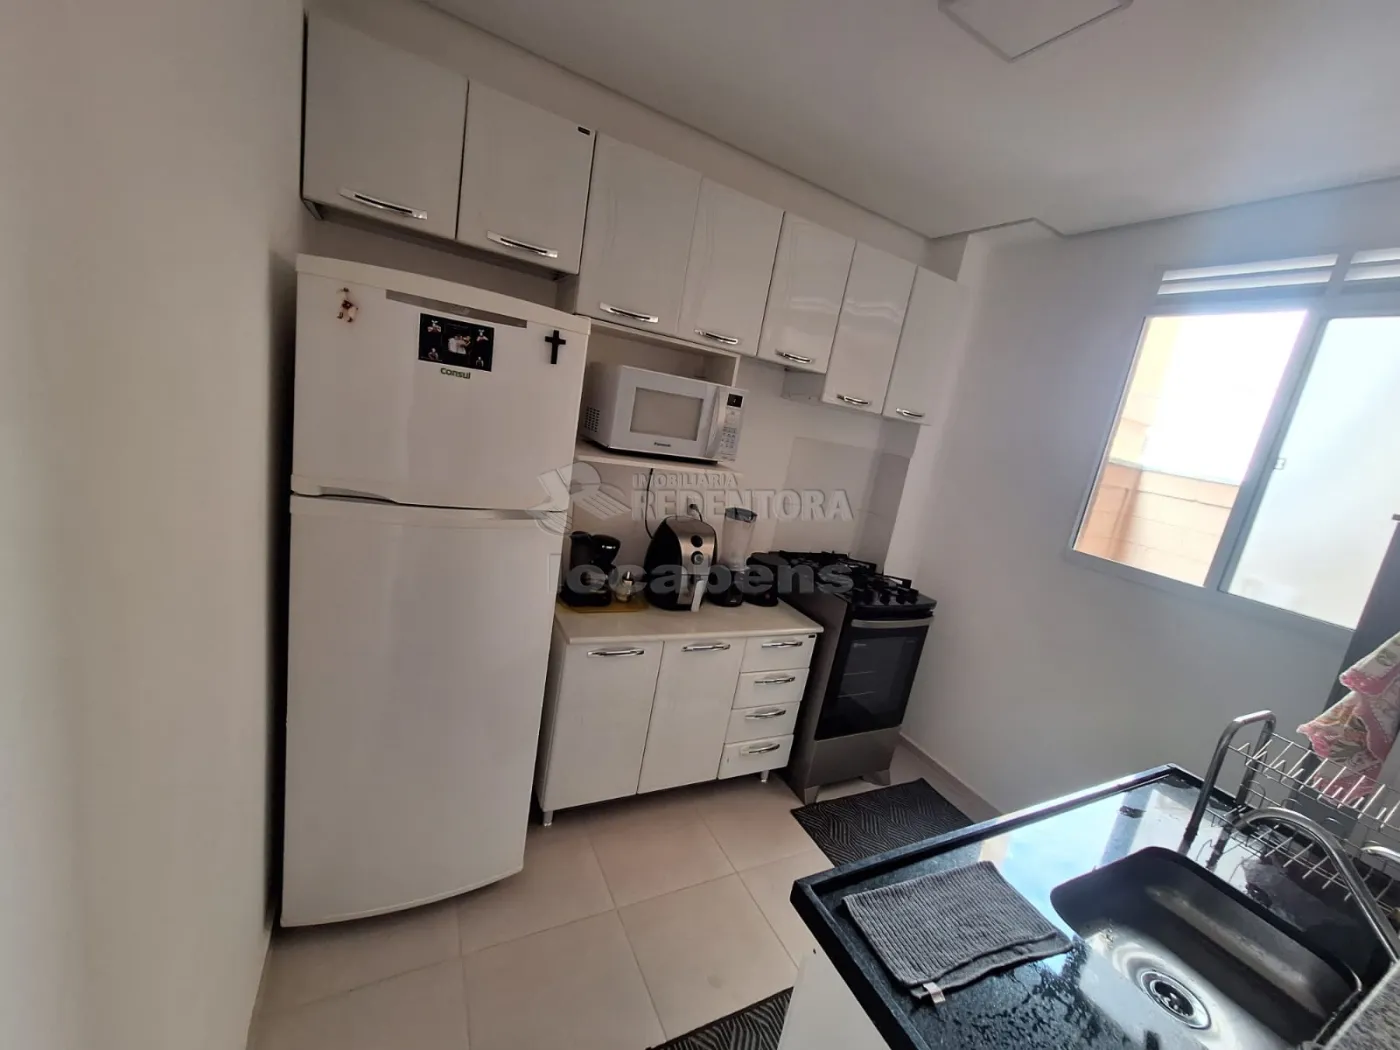 Alugar Apartamento / Padrão em São José do Rio Preto R$ 1.700,00 - Foto 3